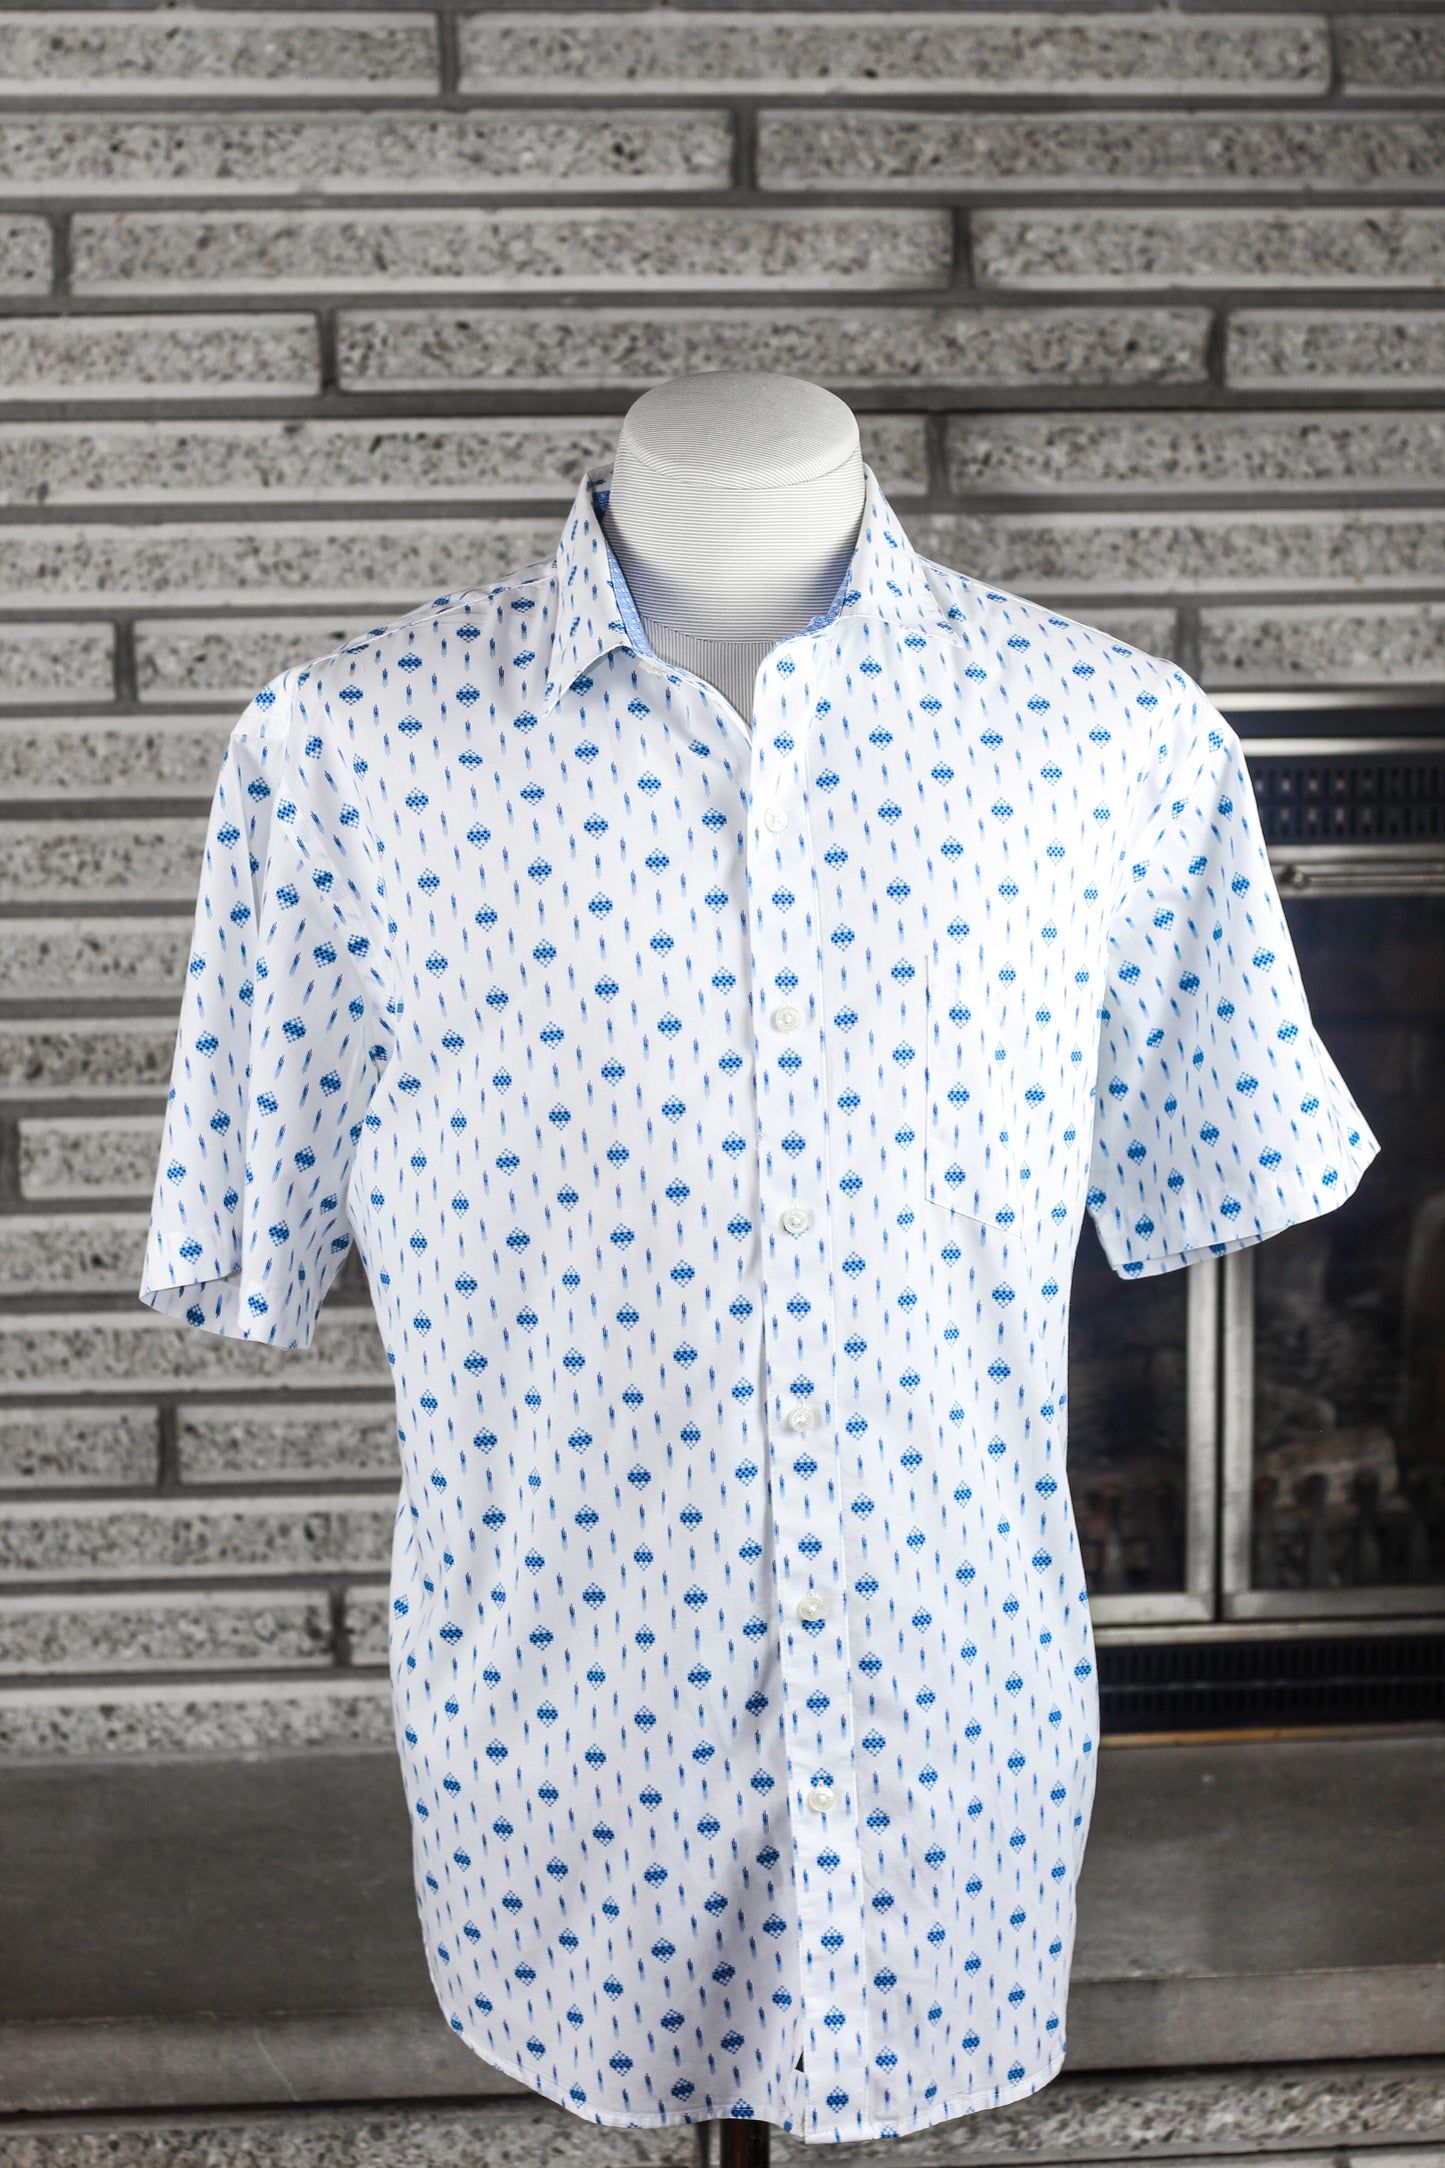 Van Heusen Mens Classic Fit Short Sleeve Button-Down Shirt